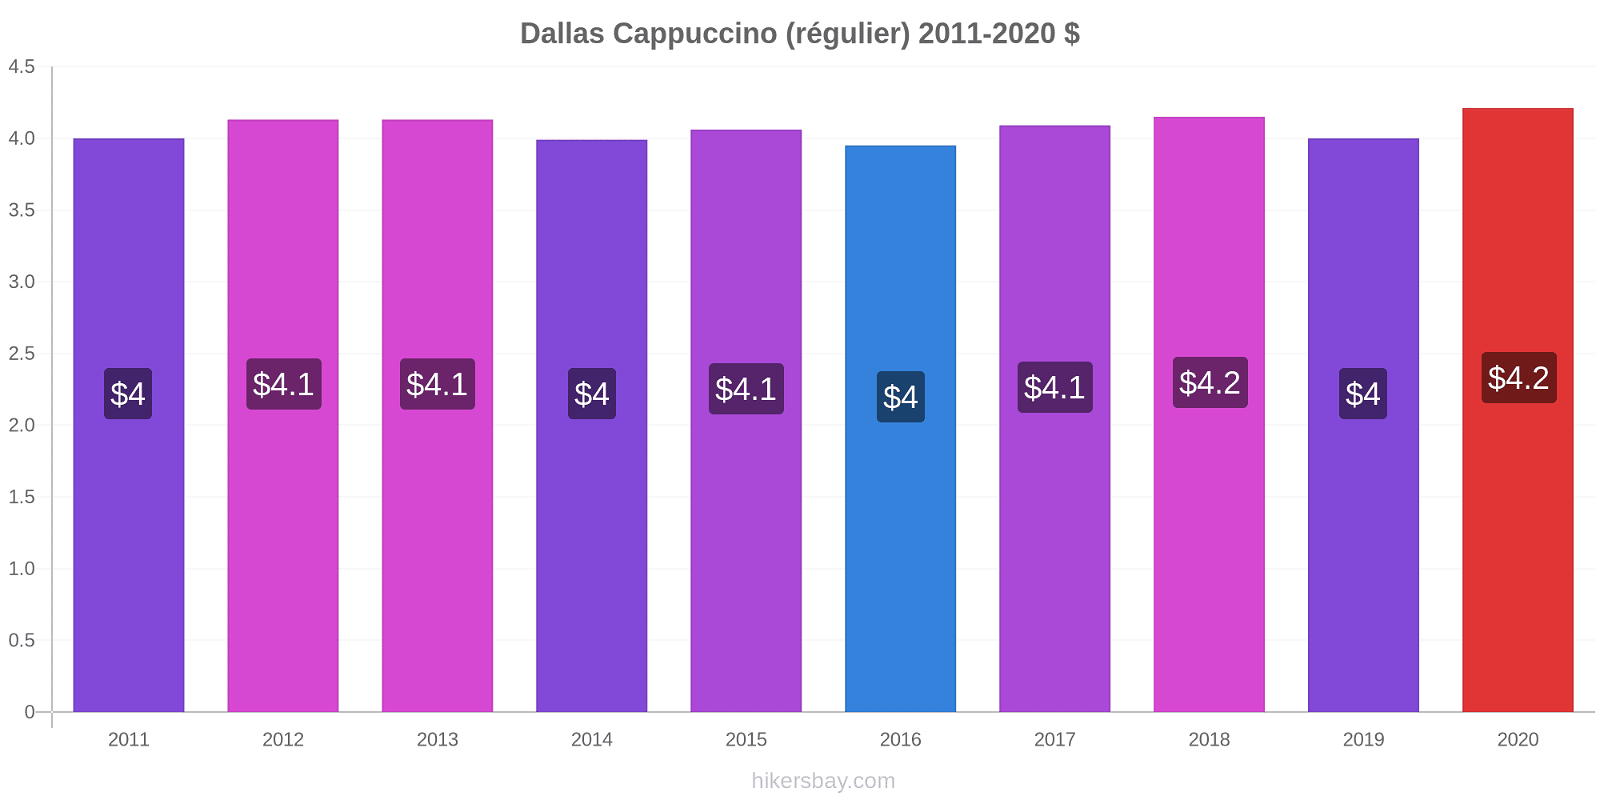 Dallas changements de prix Cappuccino (régulier) hikersbay.com